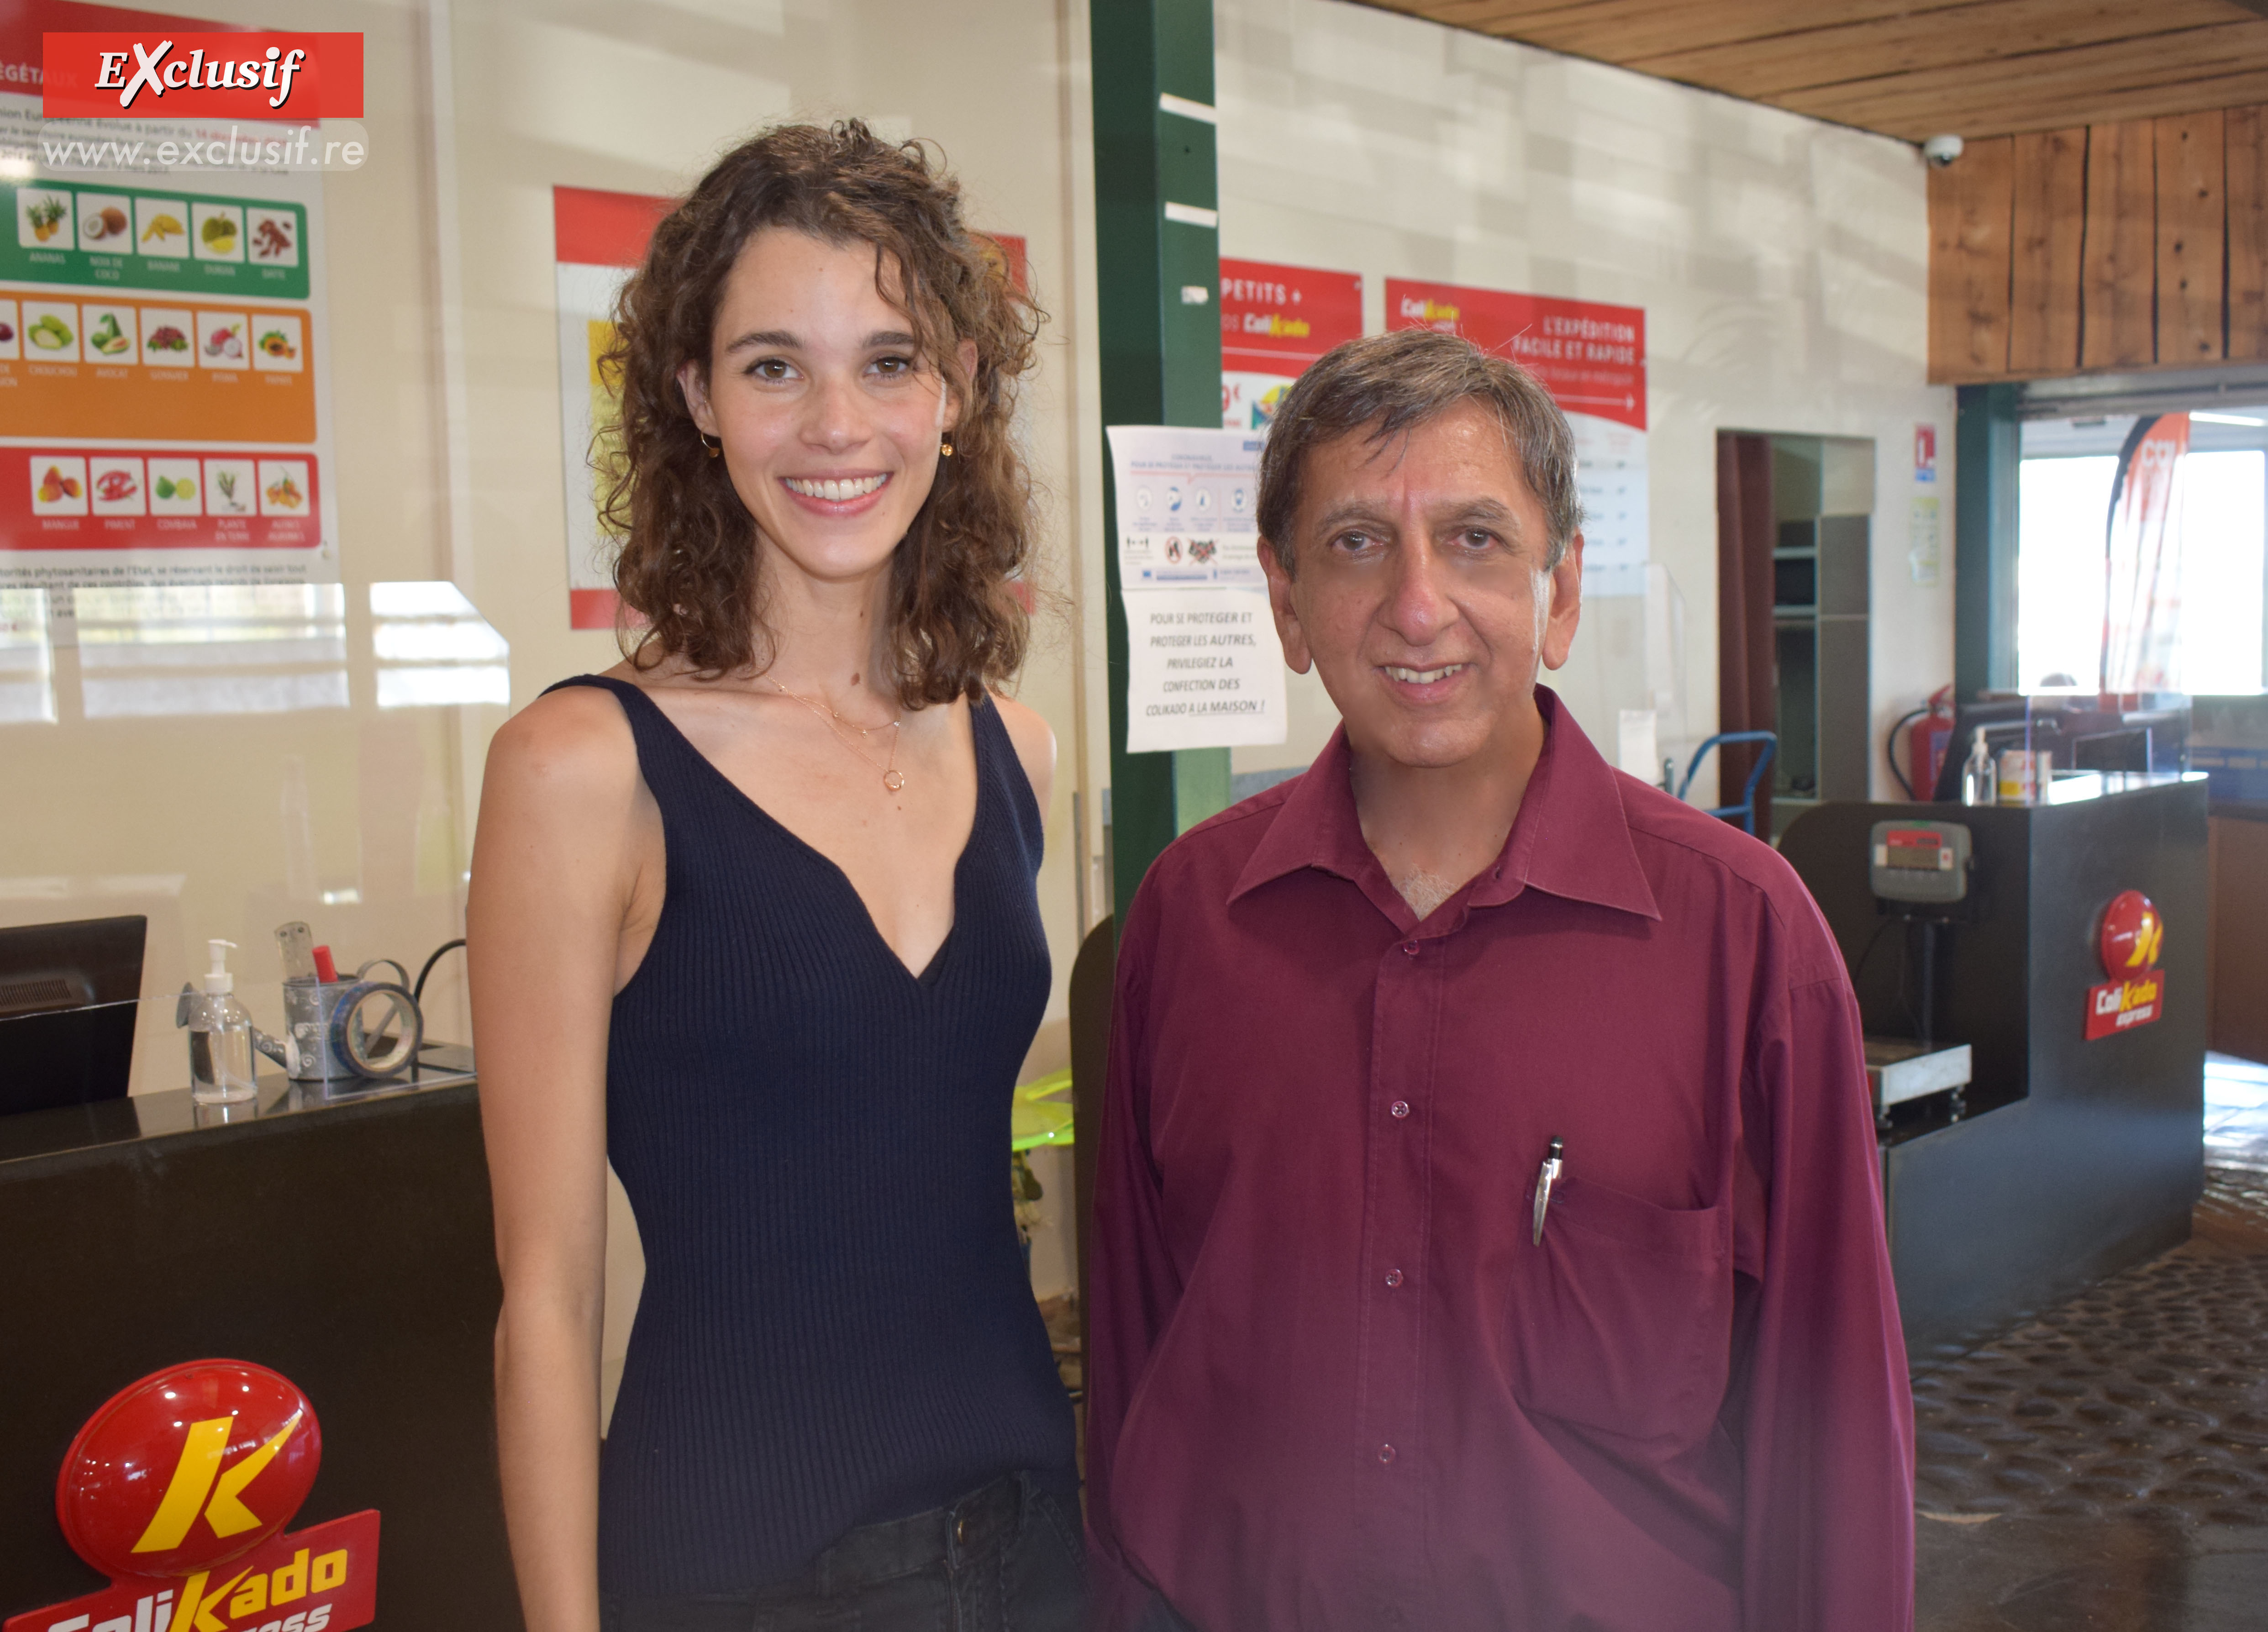 Pauline Hoarau et Aziz Patel, organisateur du concours Elite Réunion en 2011 qui a permis de découvrir Pauline